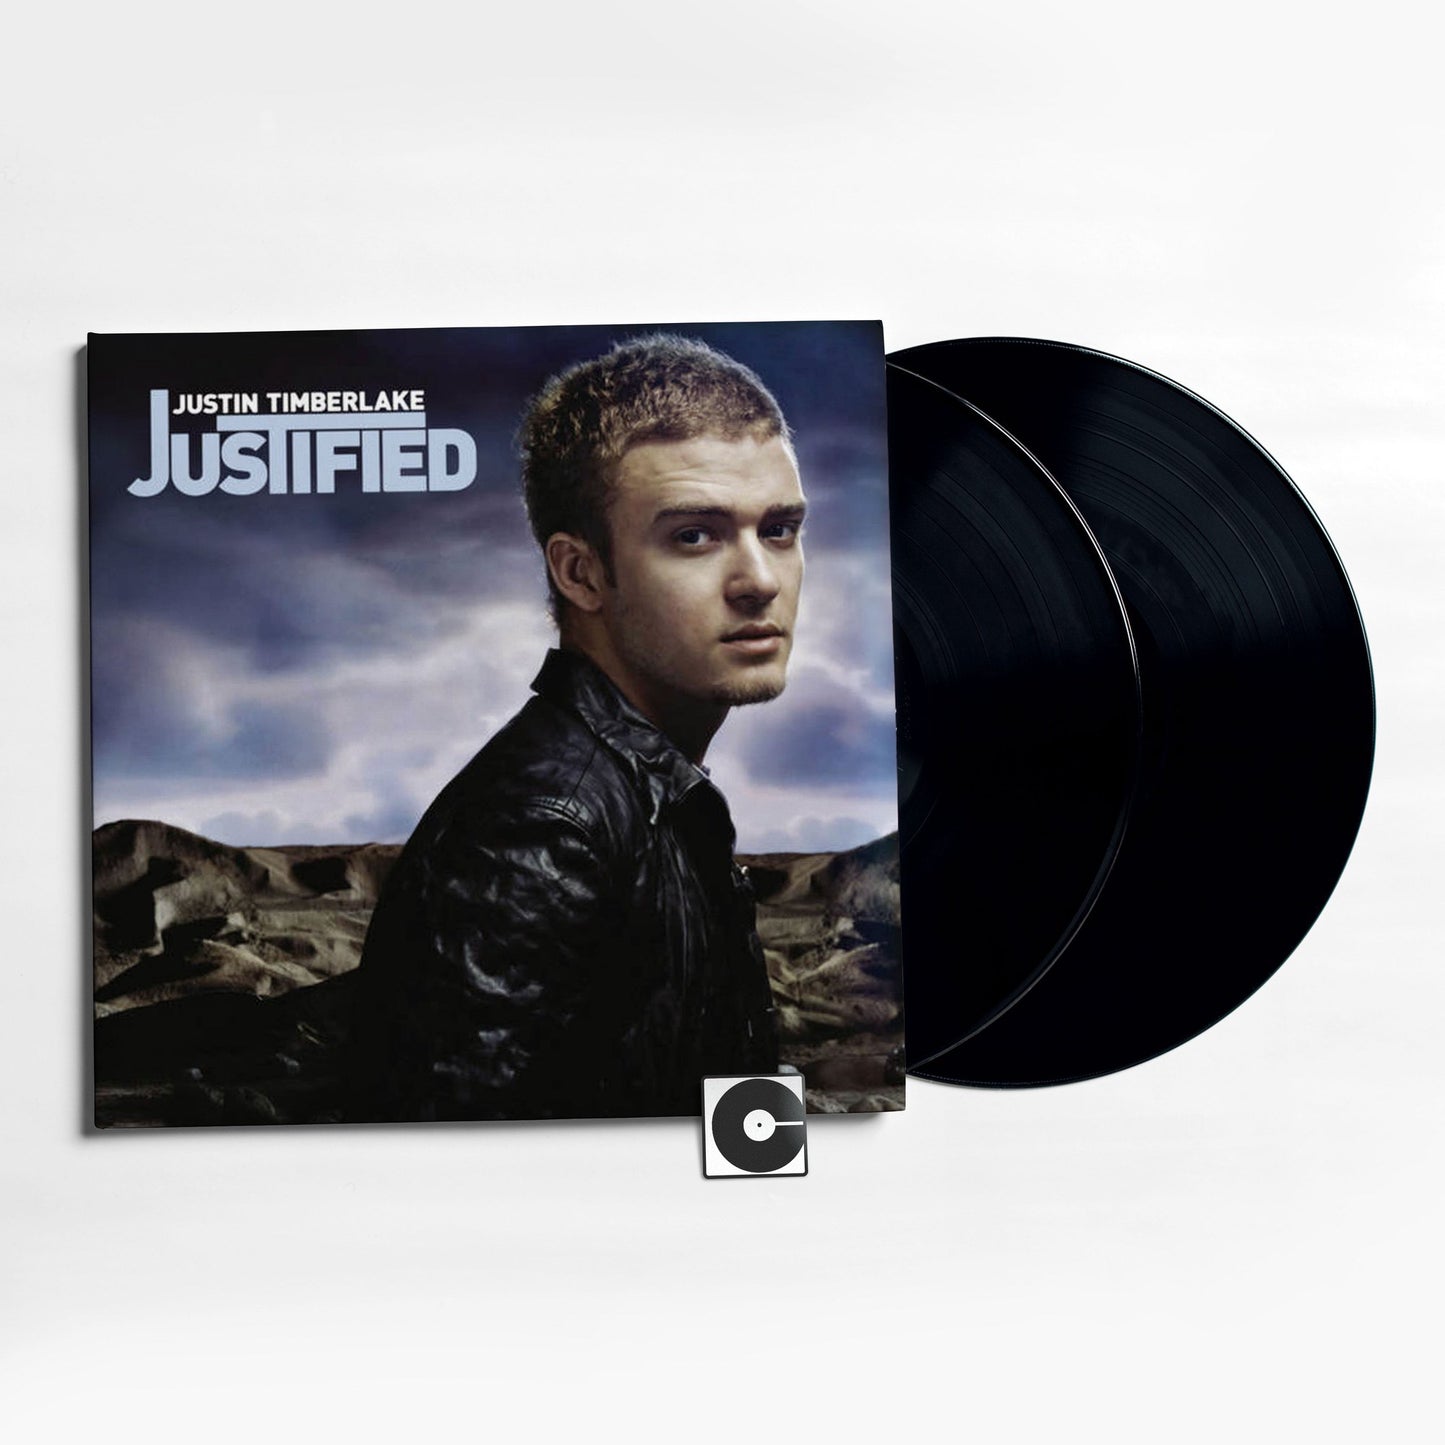 Justin Timberlake - "Justified"